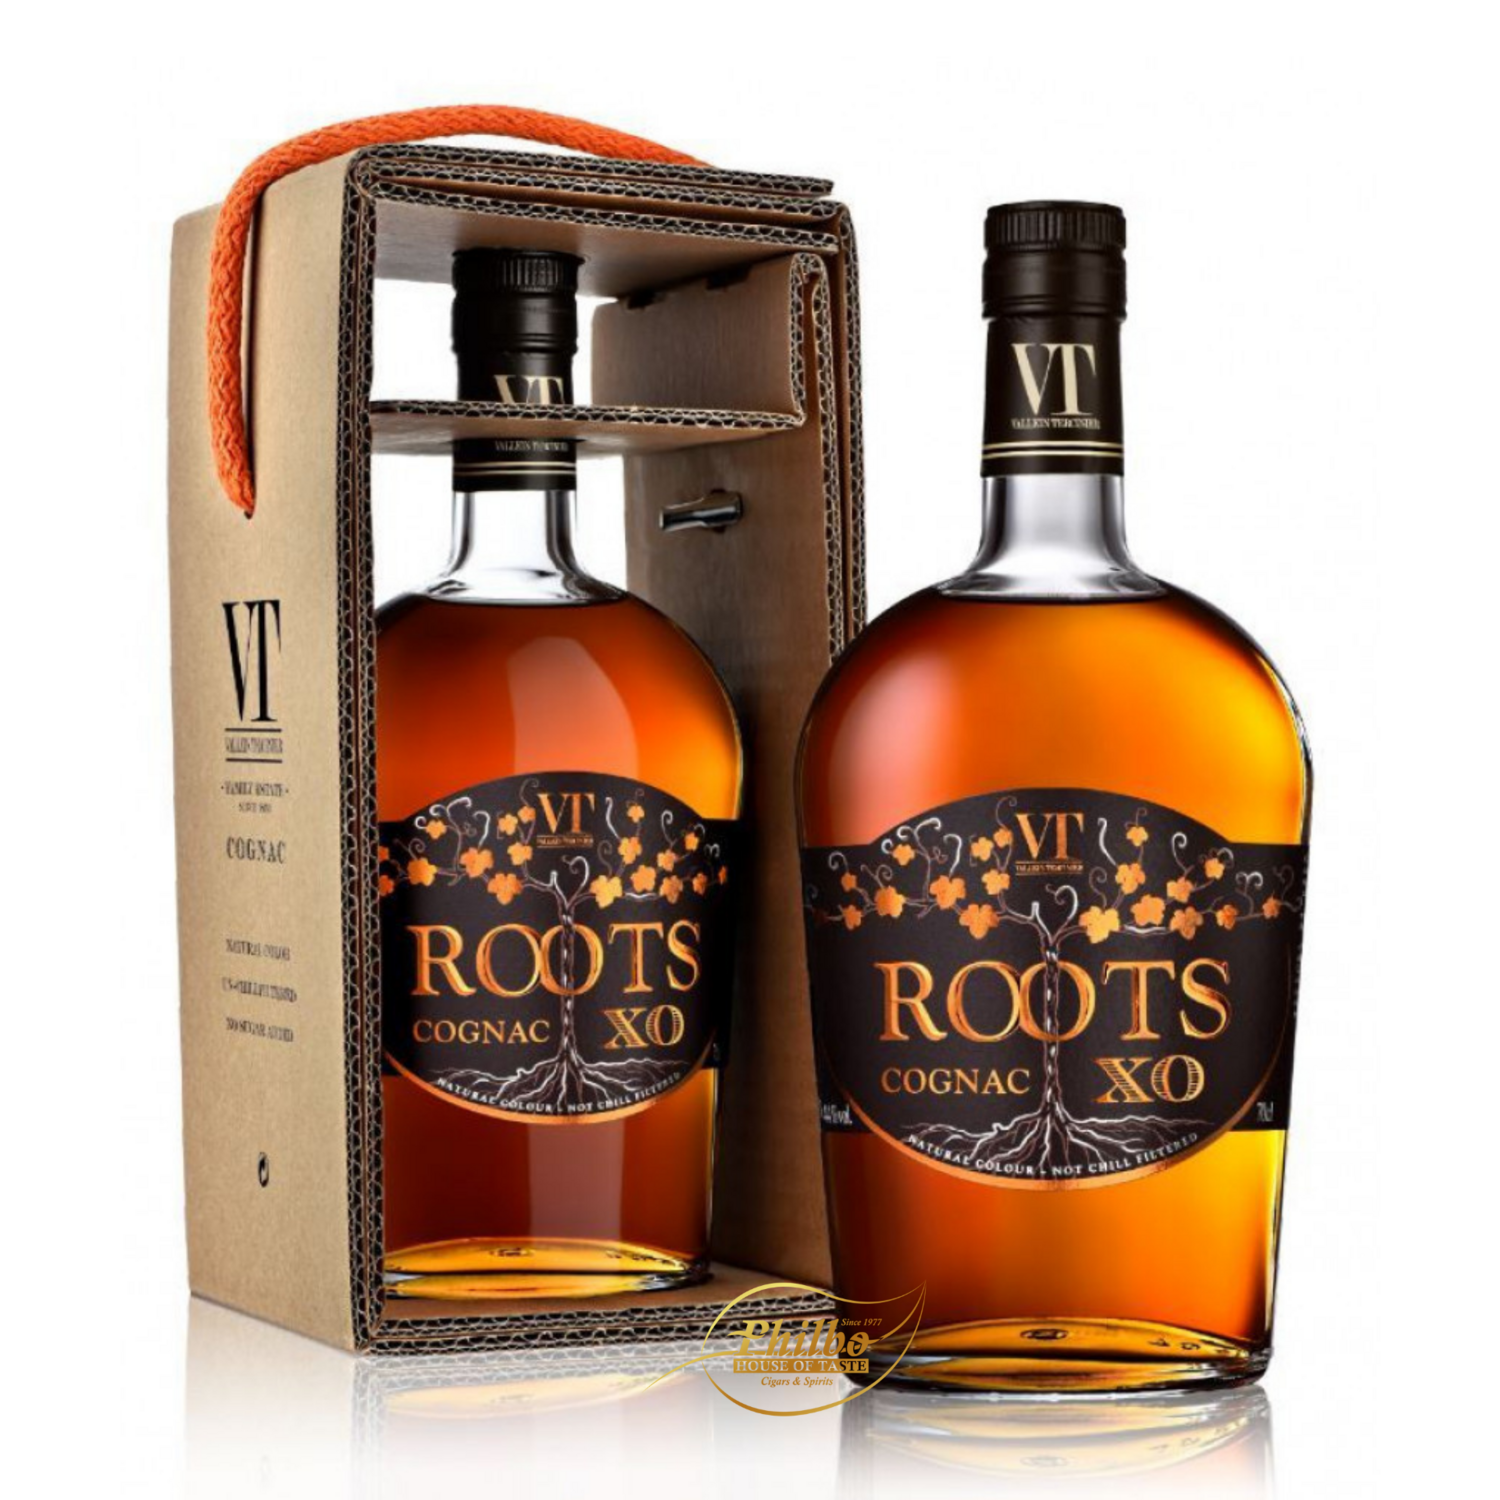 Vallein Tercinier Roots XO Cognac 44%